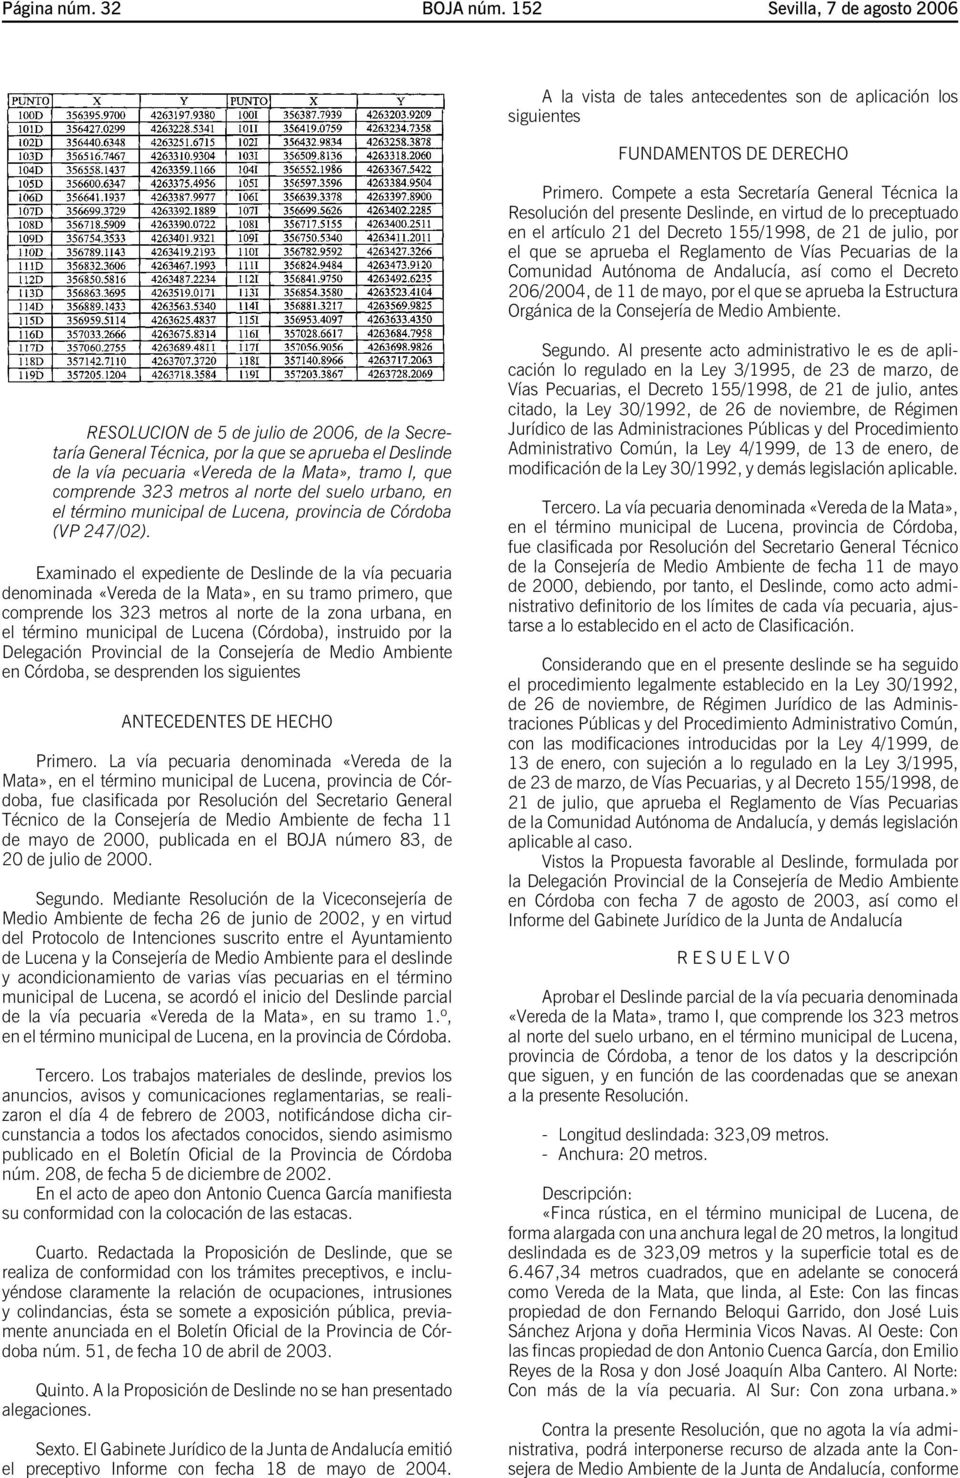 de Vías Pecuarias de la Comunidad Autónoma de Andalucía, así como el Decreto 206/2004, de 11 de mayo, por el que se aprueba la Estructura Orgánica de la Consejería de Medio Ambiente.